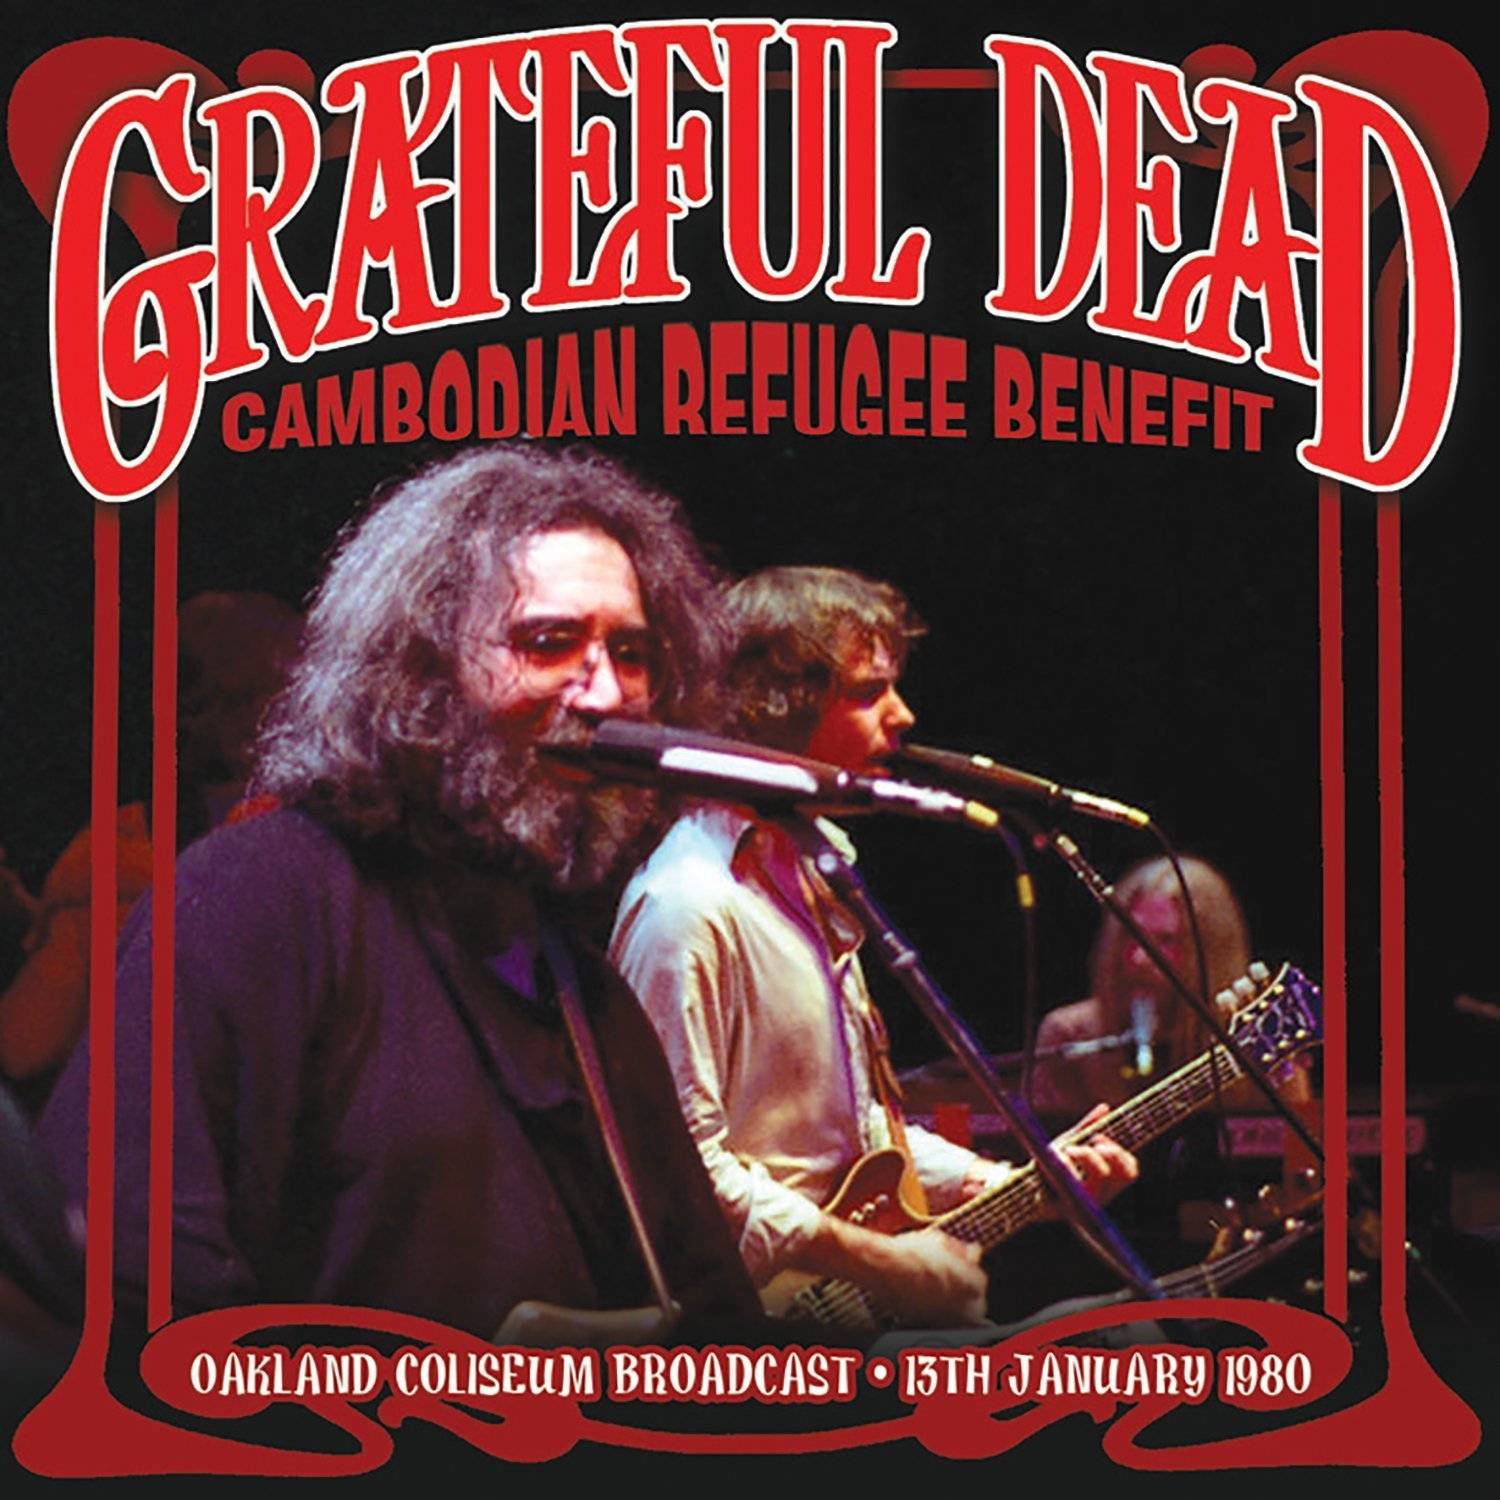 Grateful Dead : Cambodian Refugee Benefit - Oakland Coliseum '80 (CD)